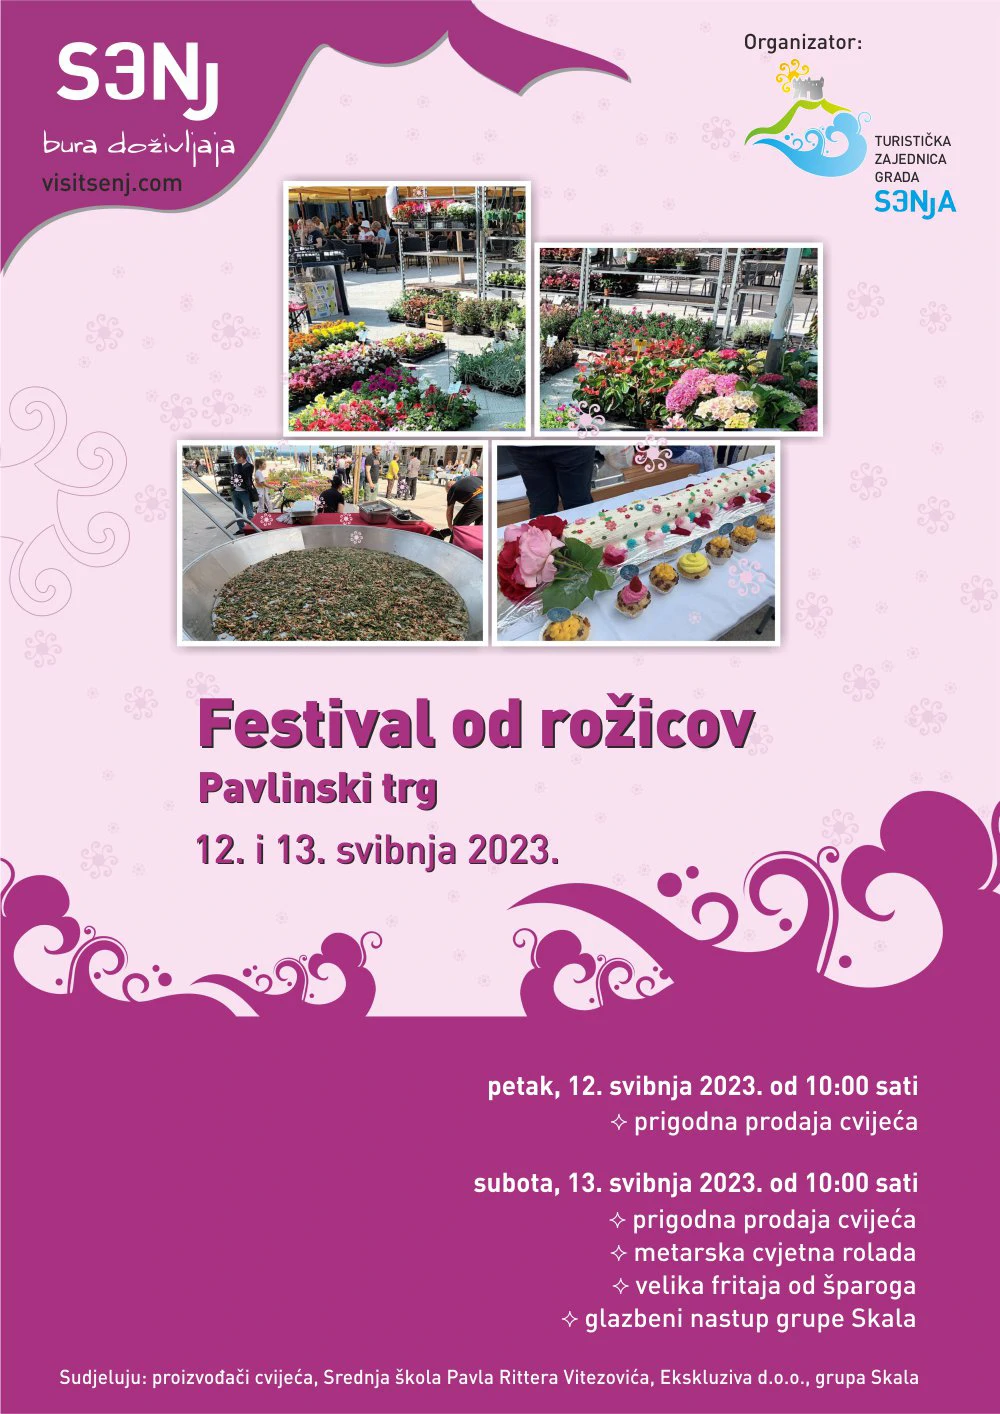 Festival od rožicov Senj